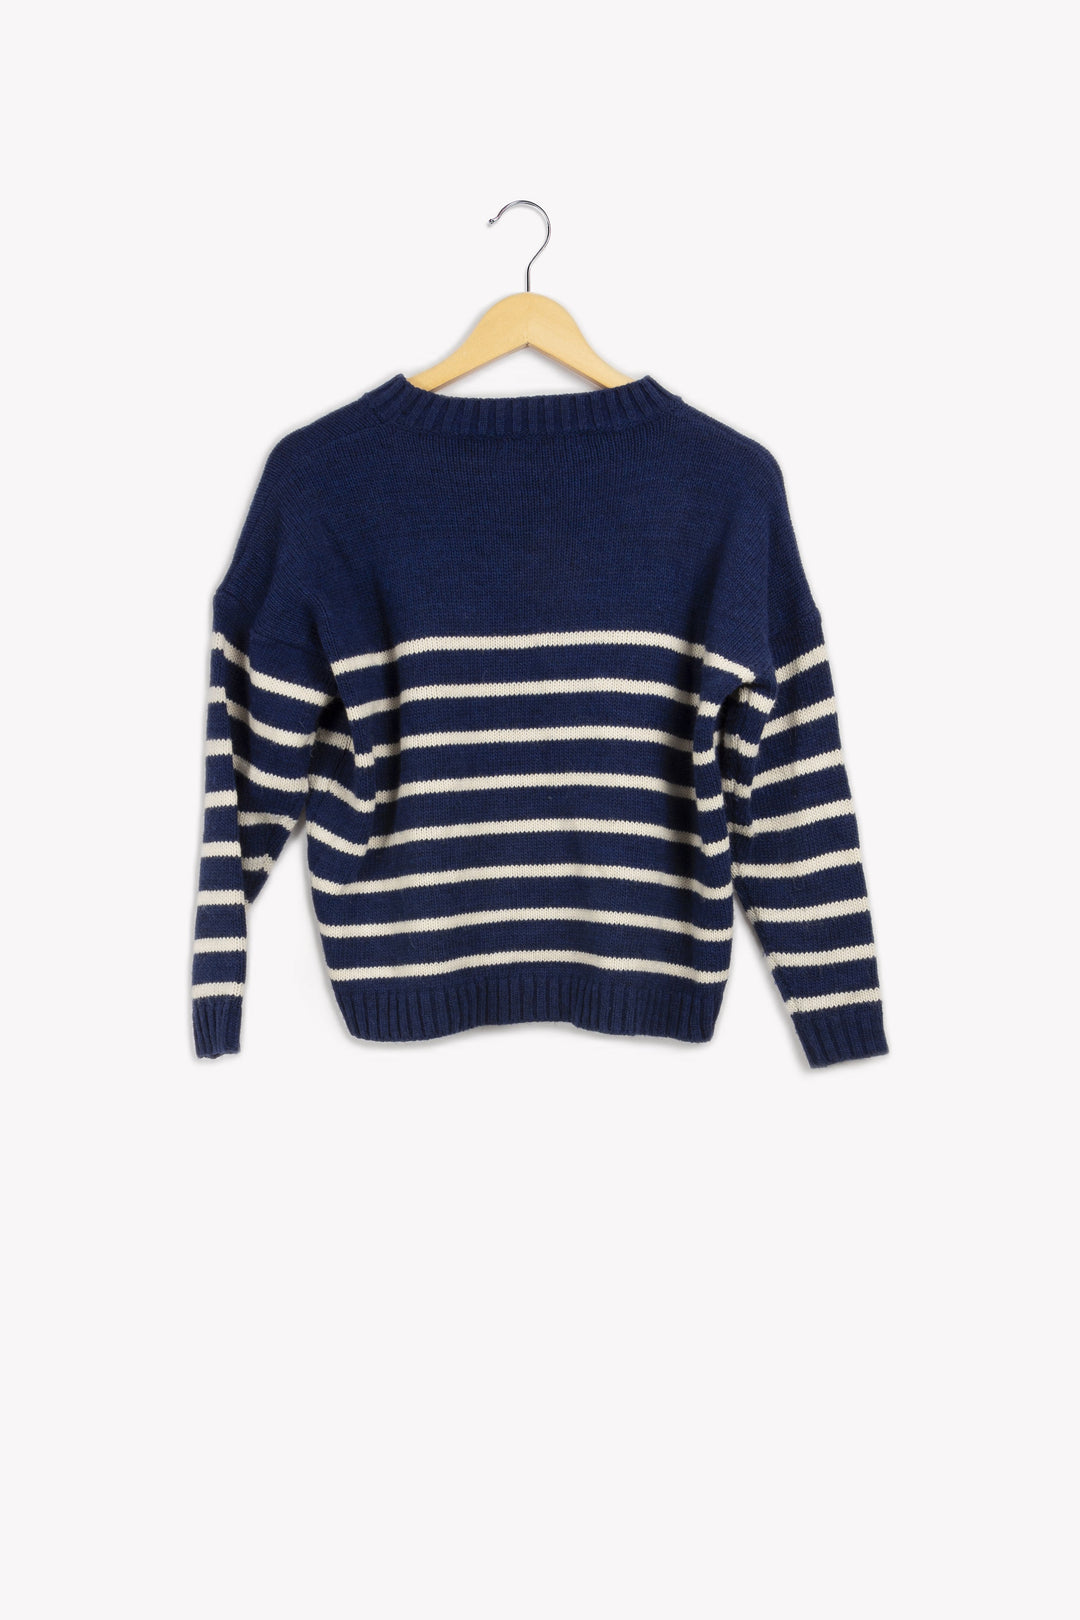 Sailor sweater - XS/34